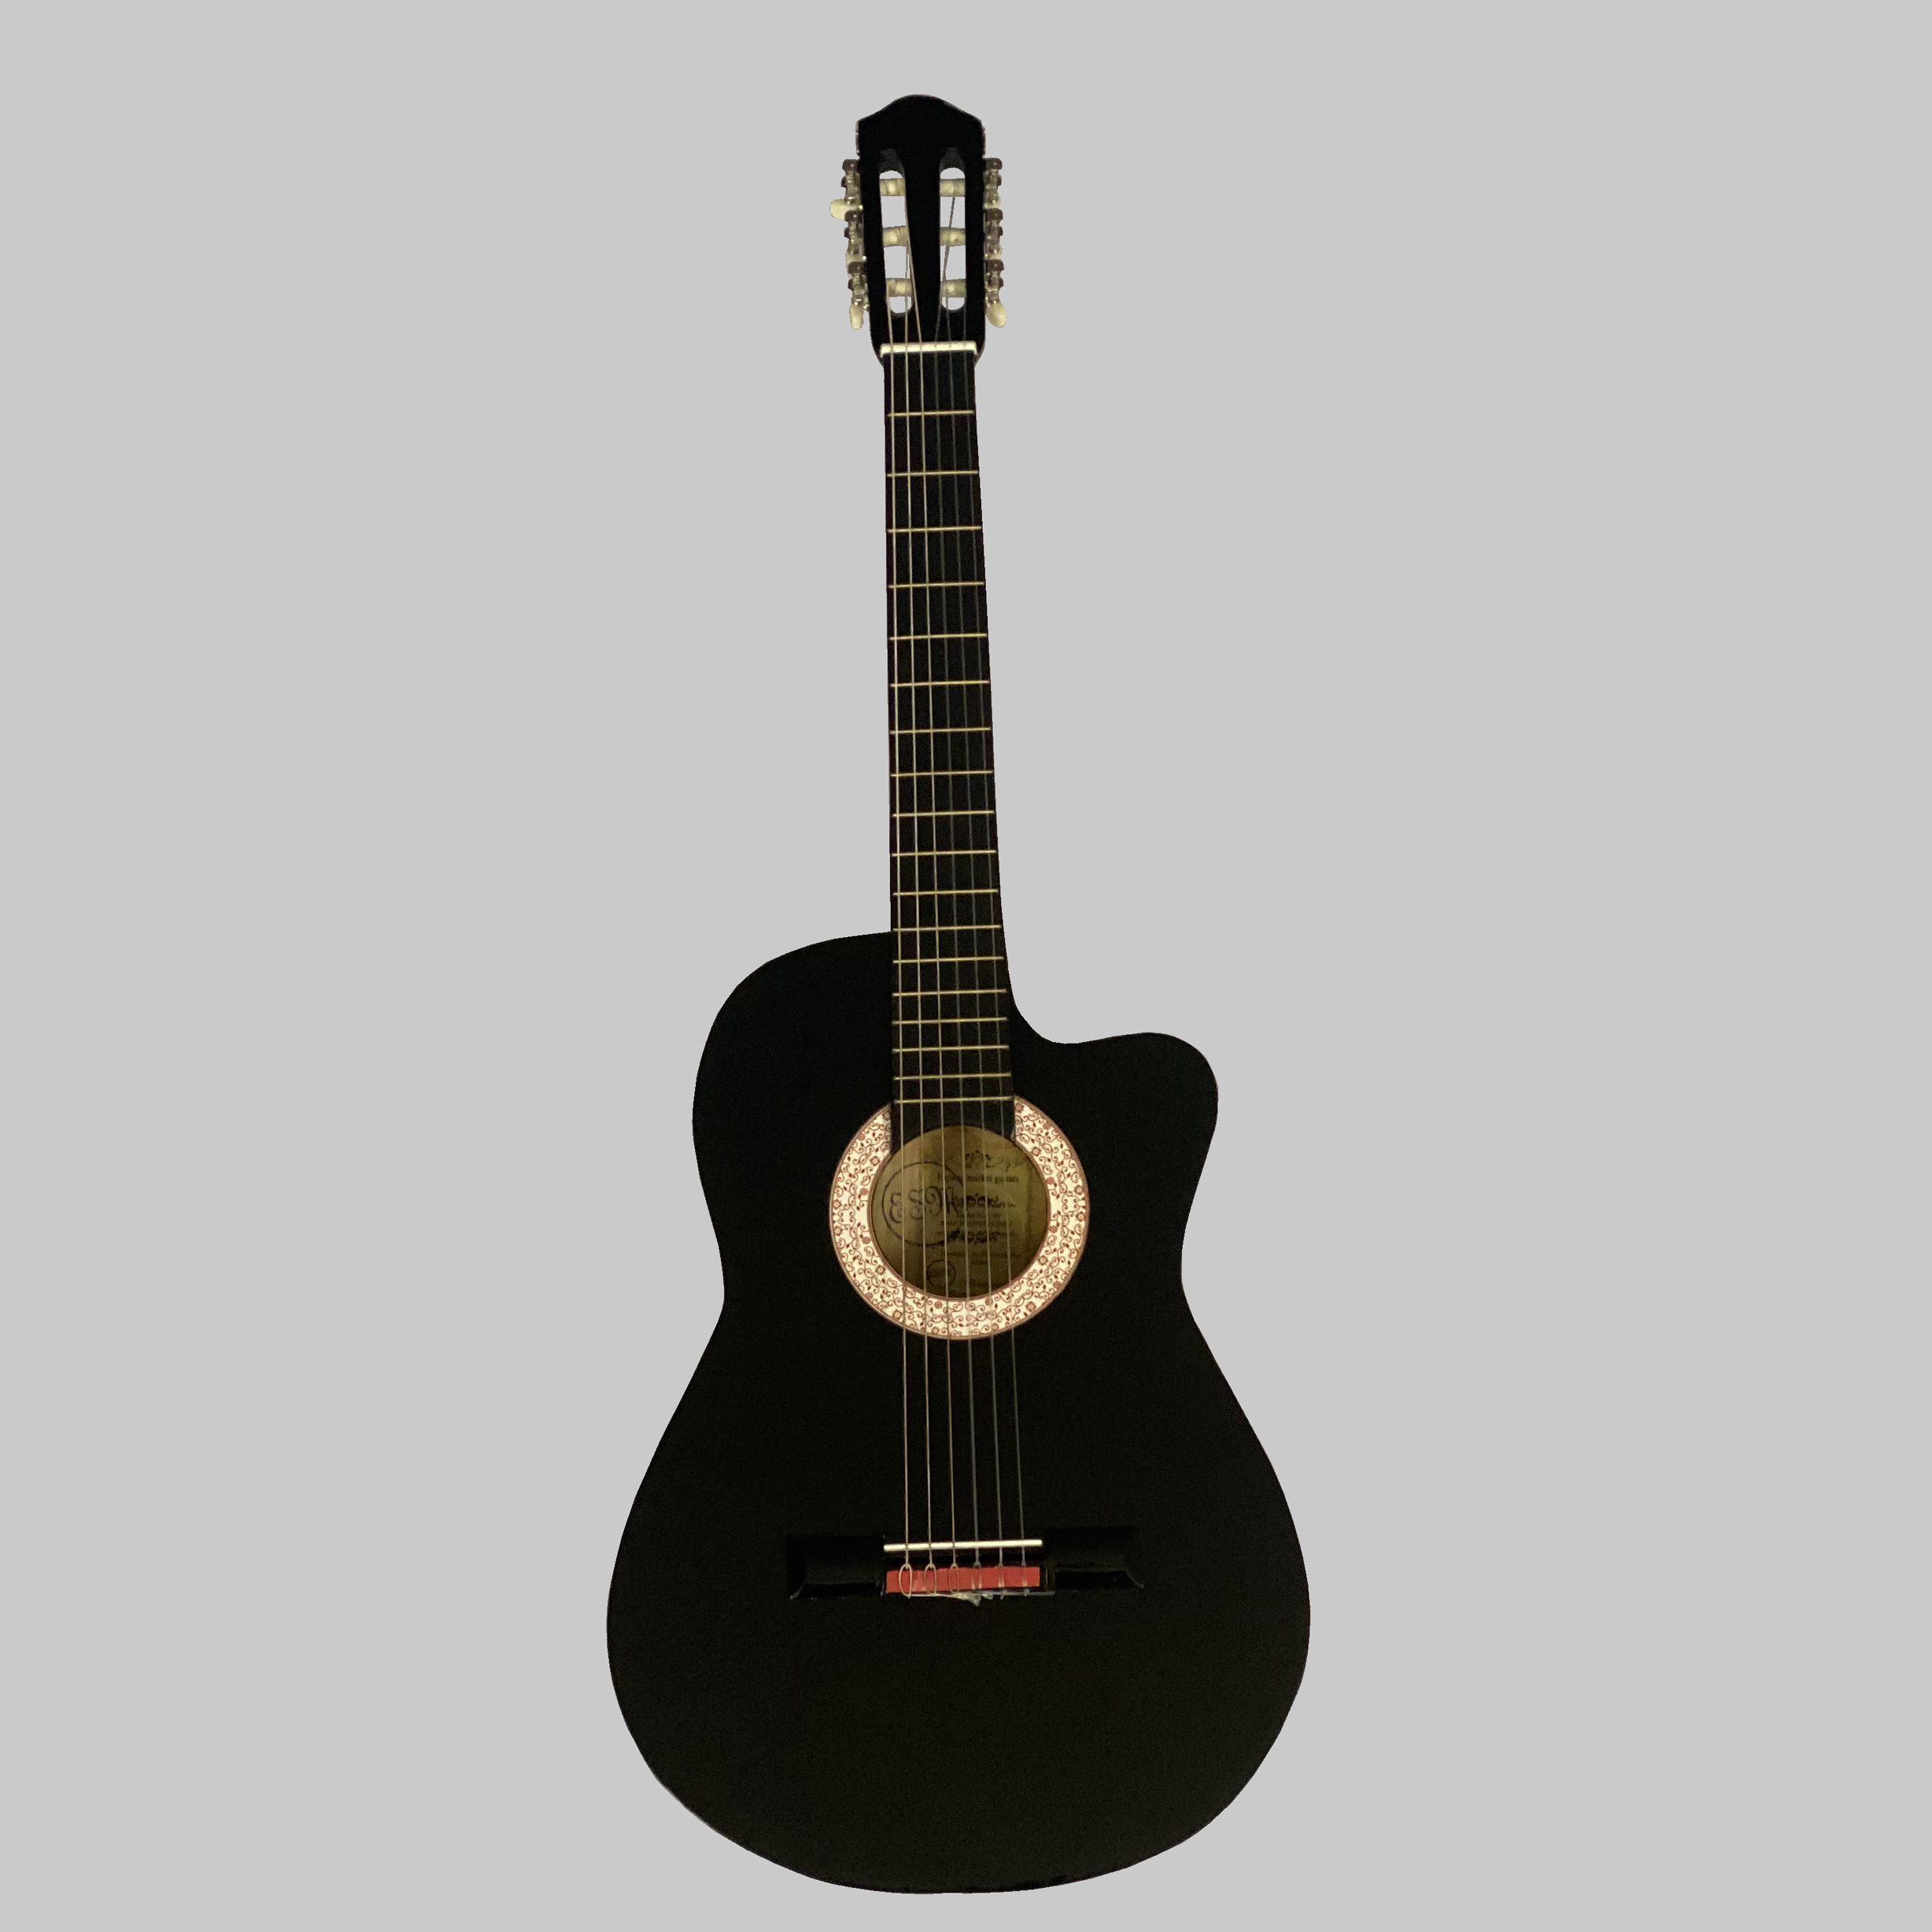 نکته خرید - قیمت روز گیتار پاپ اسپیروس مارکت مدل C50 خرید